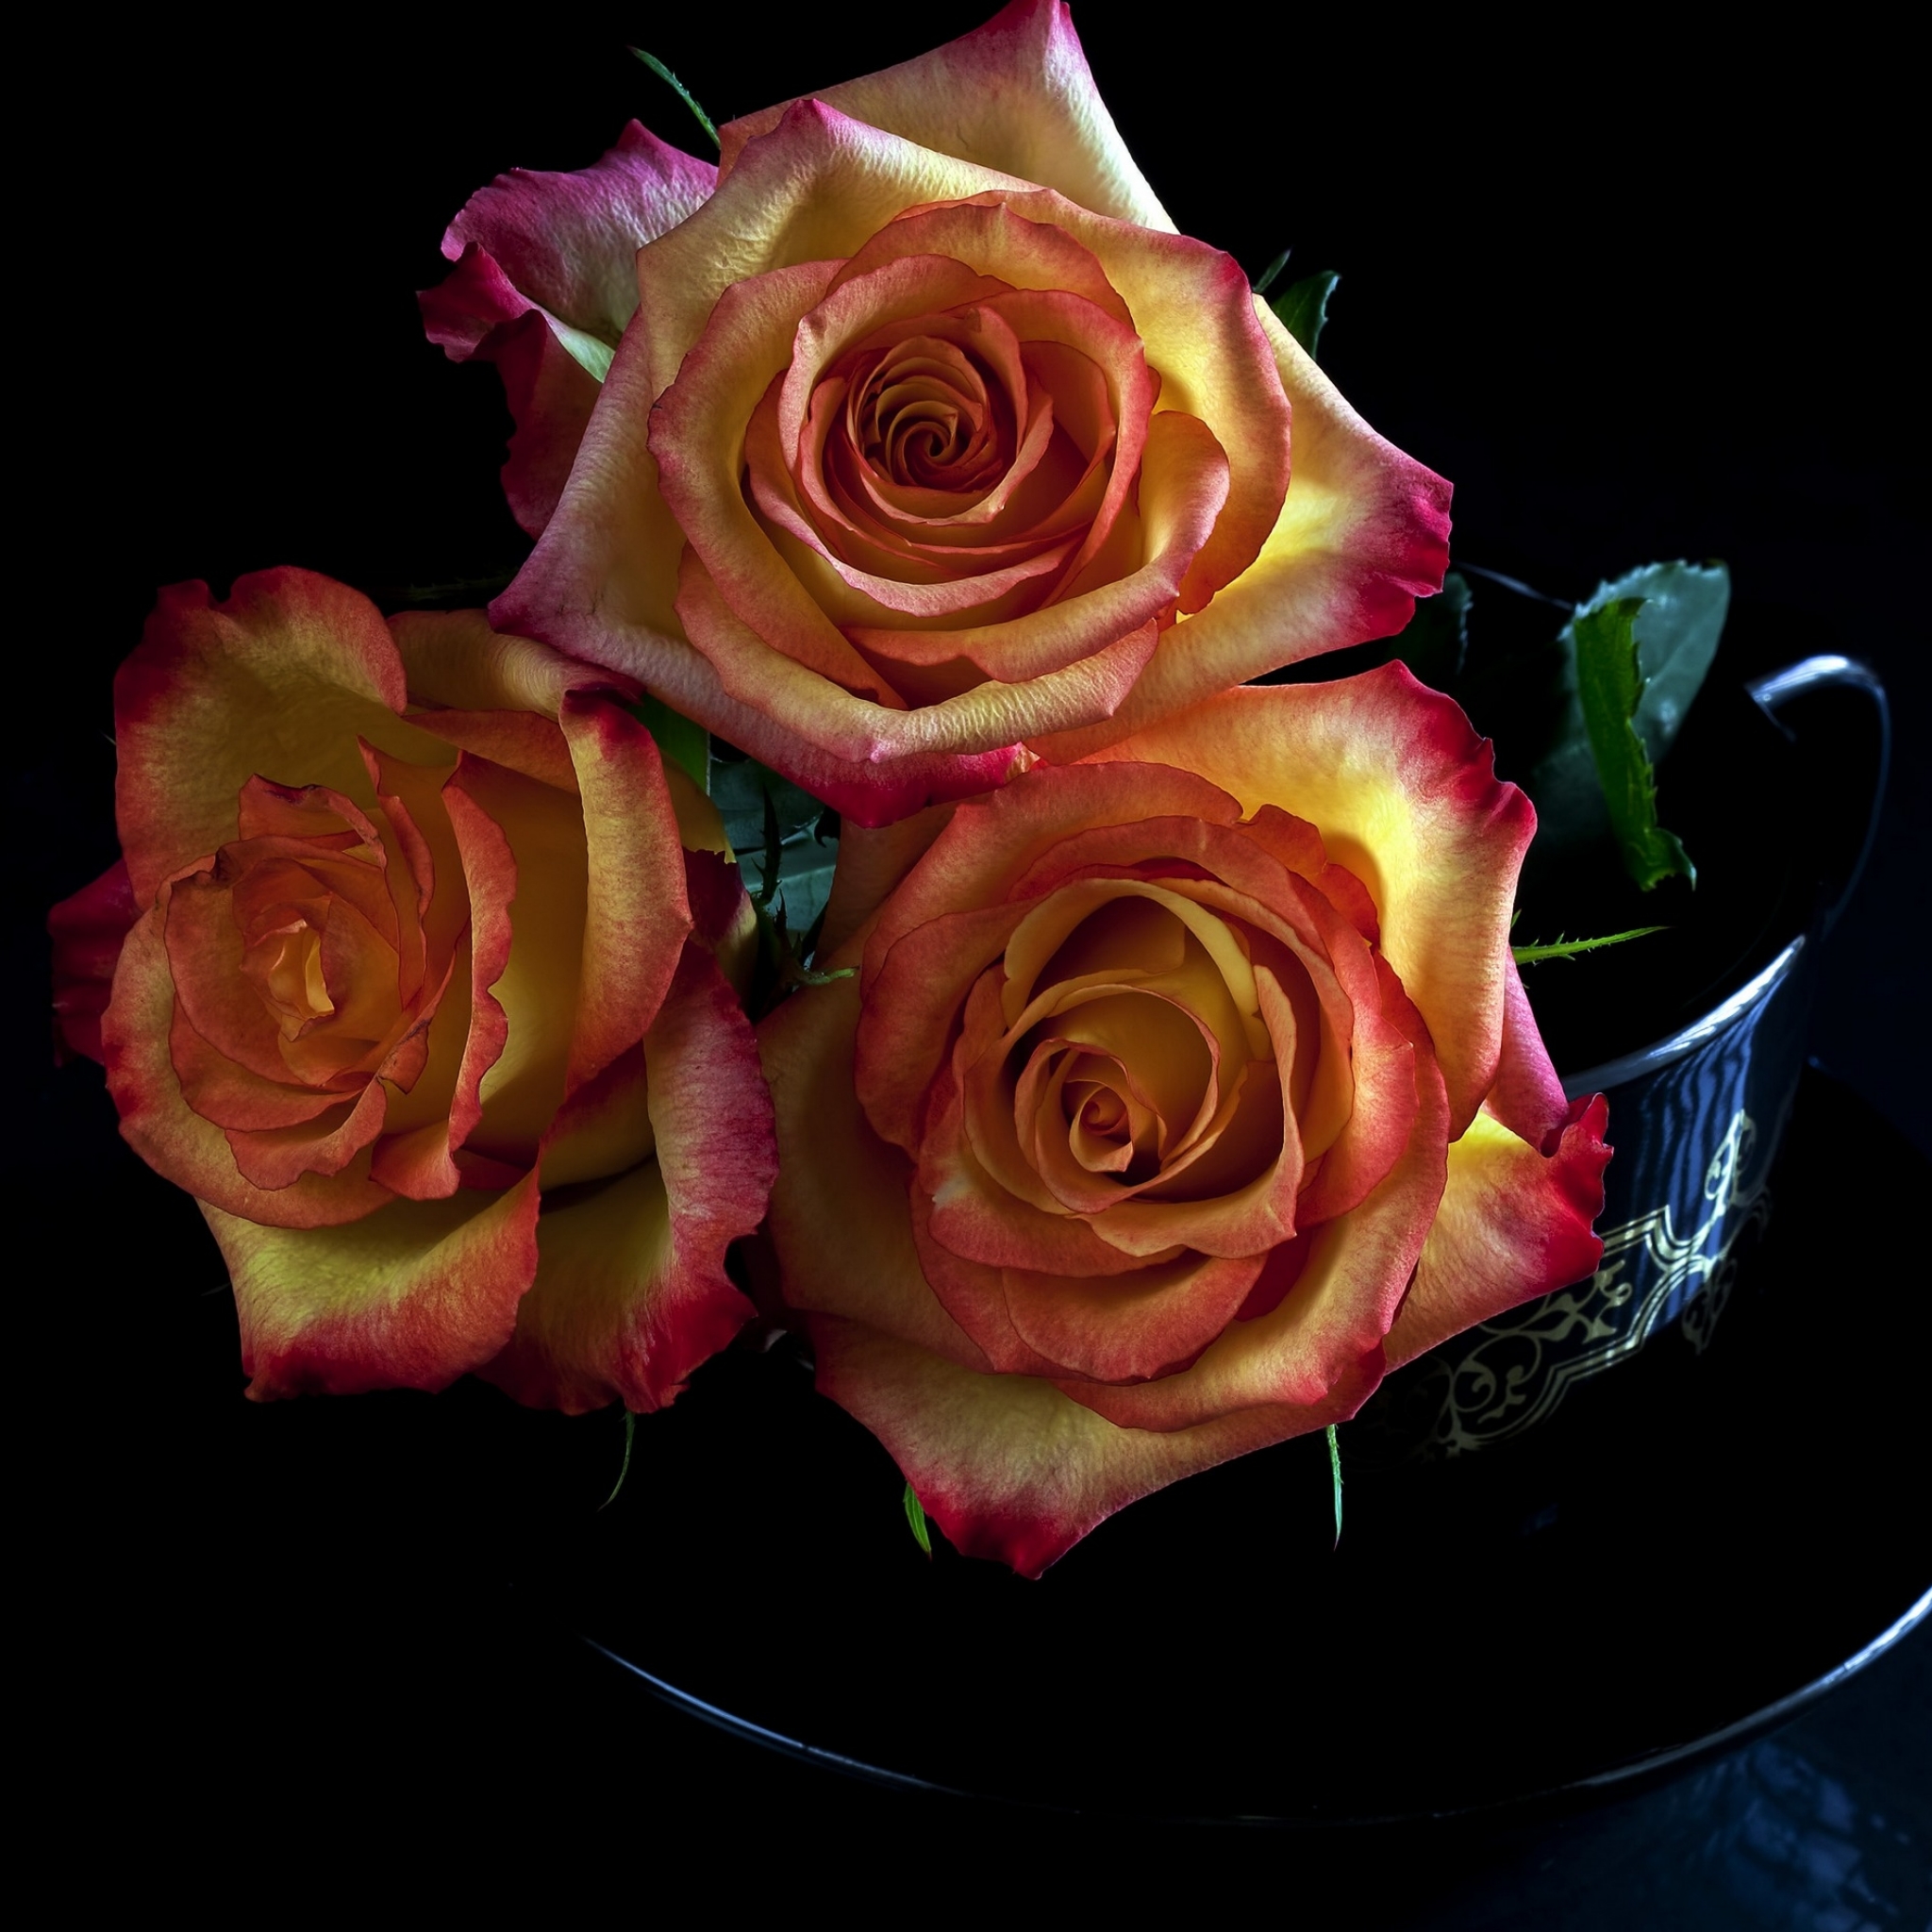 Скачать обои бесплатно Цветок, Роза, Земля/природа картинка на рабочий стол ПК